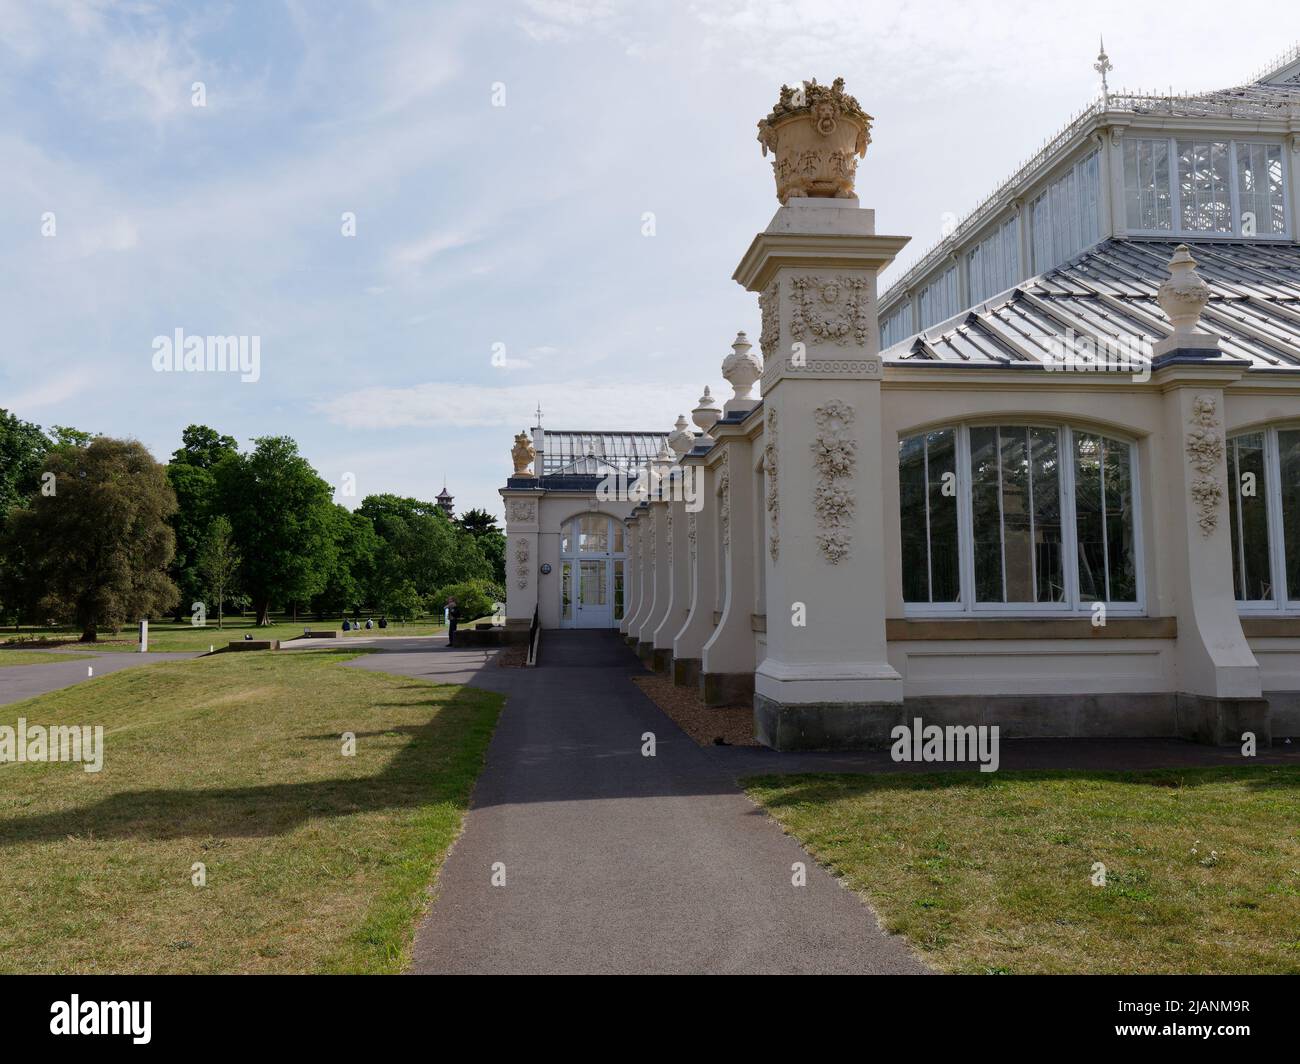 Richmond, Grand Londres, Angleterre, 18 mai 2022: Jardins botaniques royaux Kew. Vue latérale de la maison Temperate située dans une pelouse et des arbres. Banque D'Images